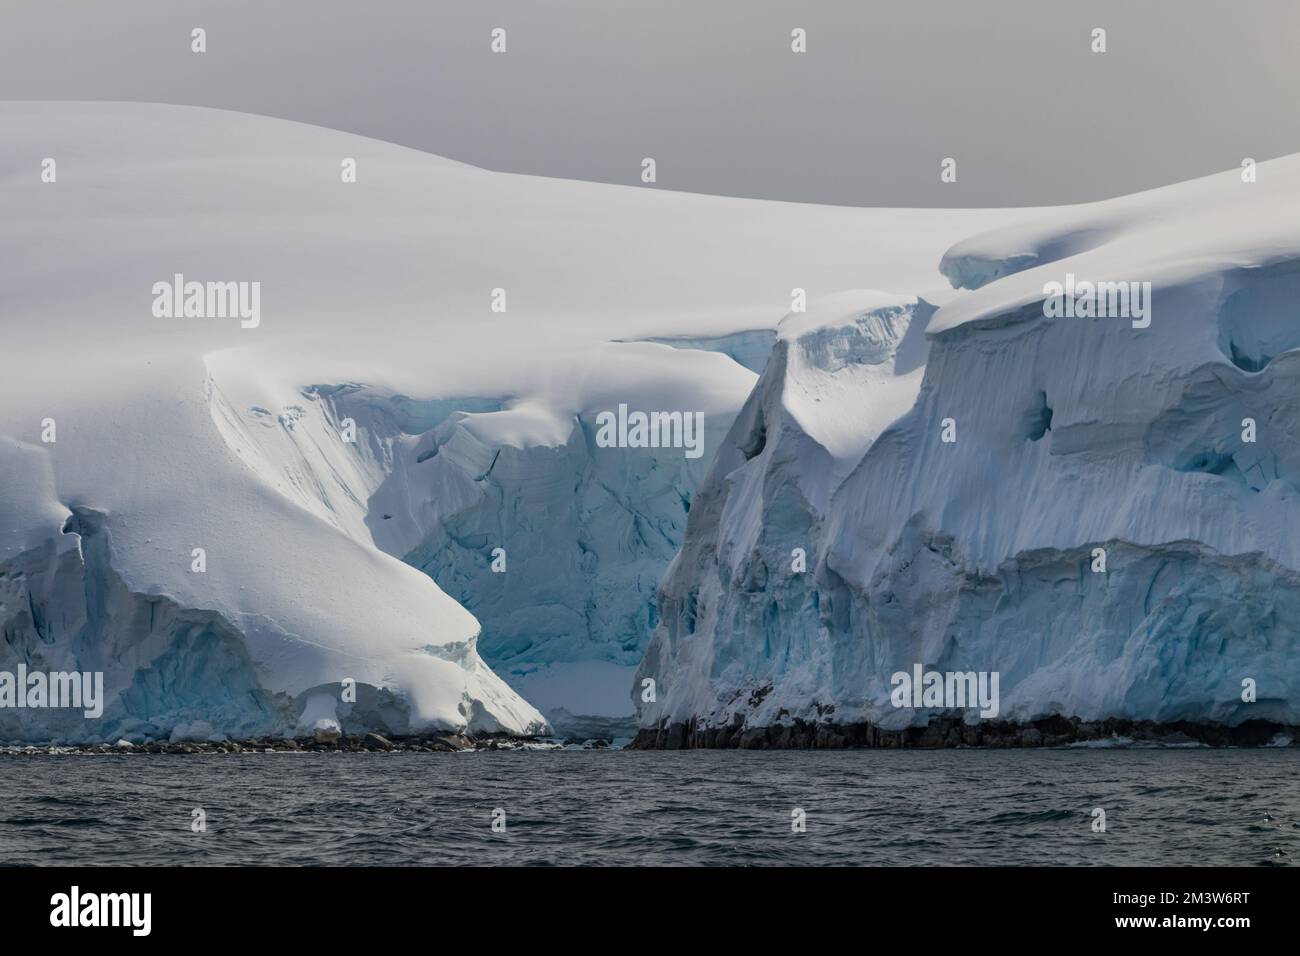 Vista in primo piano del bordo della penisola antartica, rivelando piccola insenatura. Rocce ricoperte di profondi strati di neve, ghiaccio blu e bianco. Foto Stock